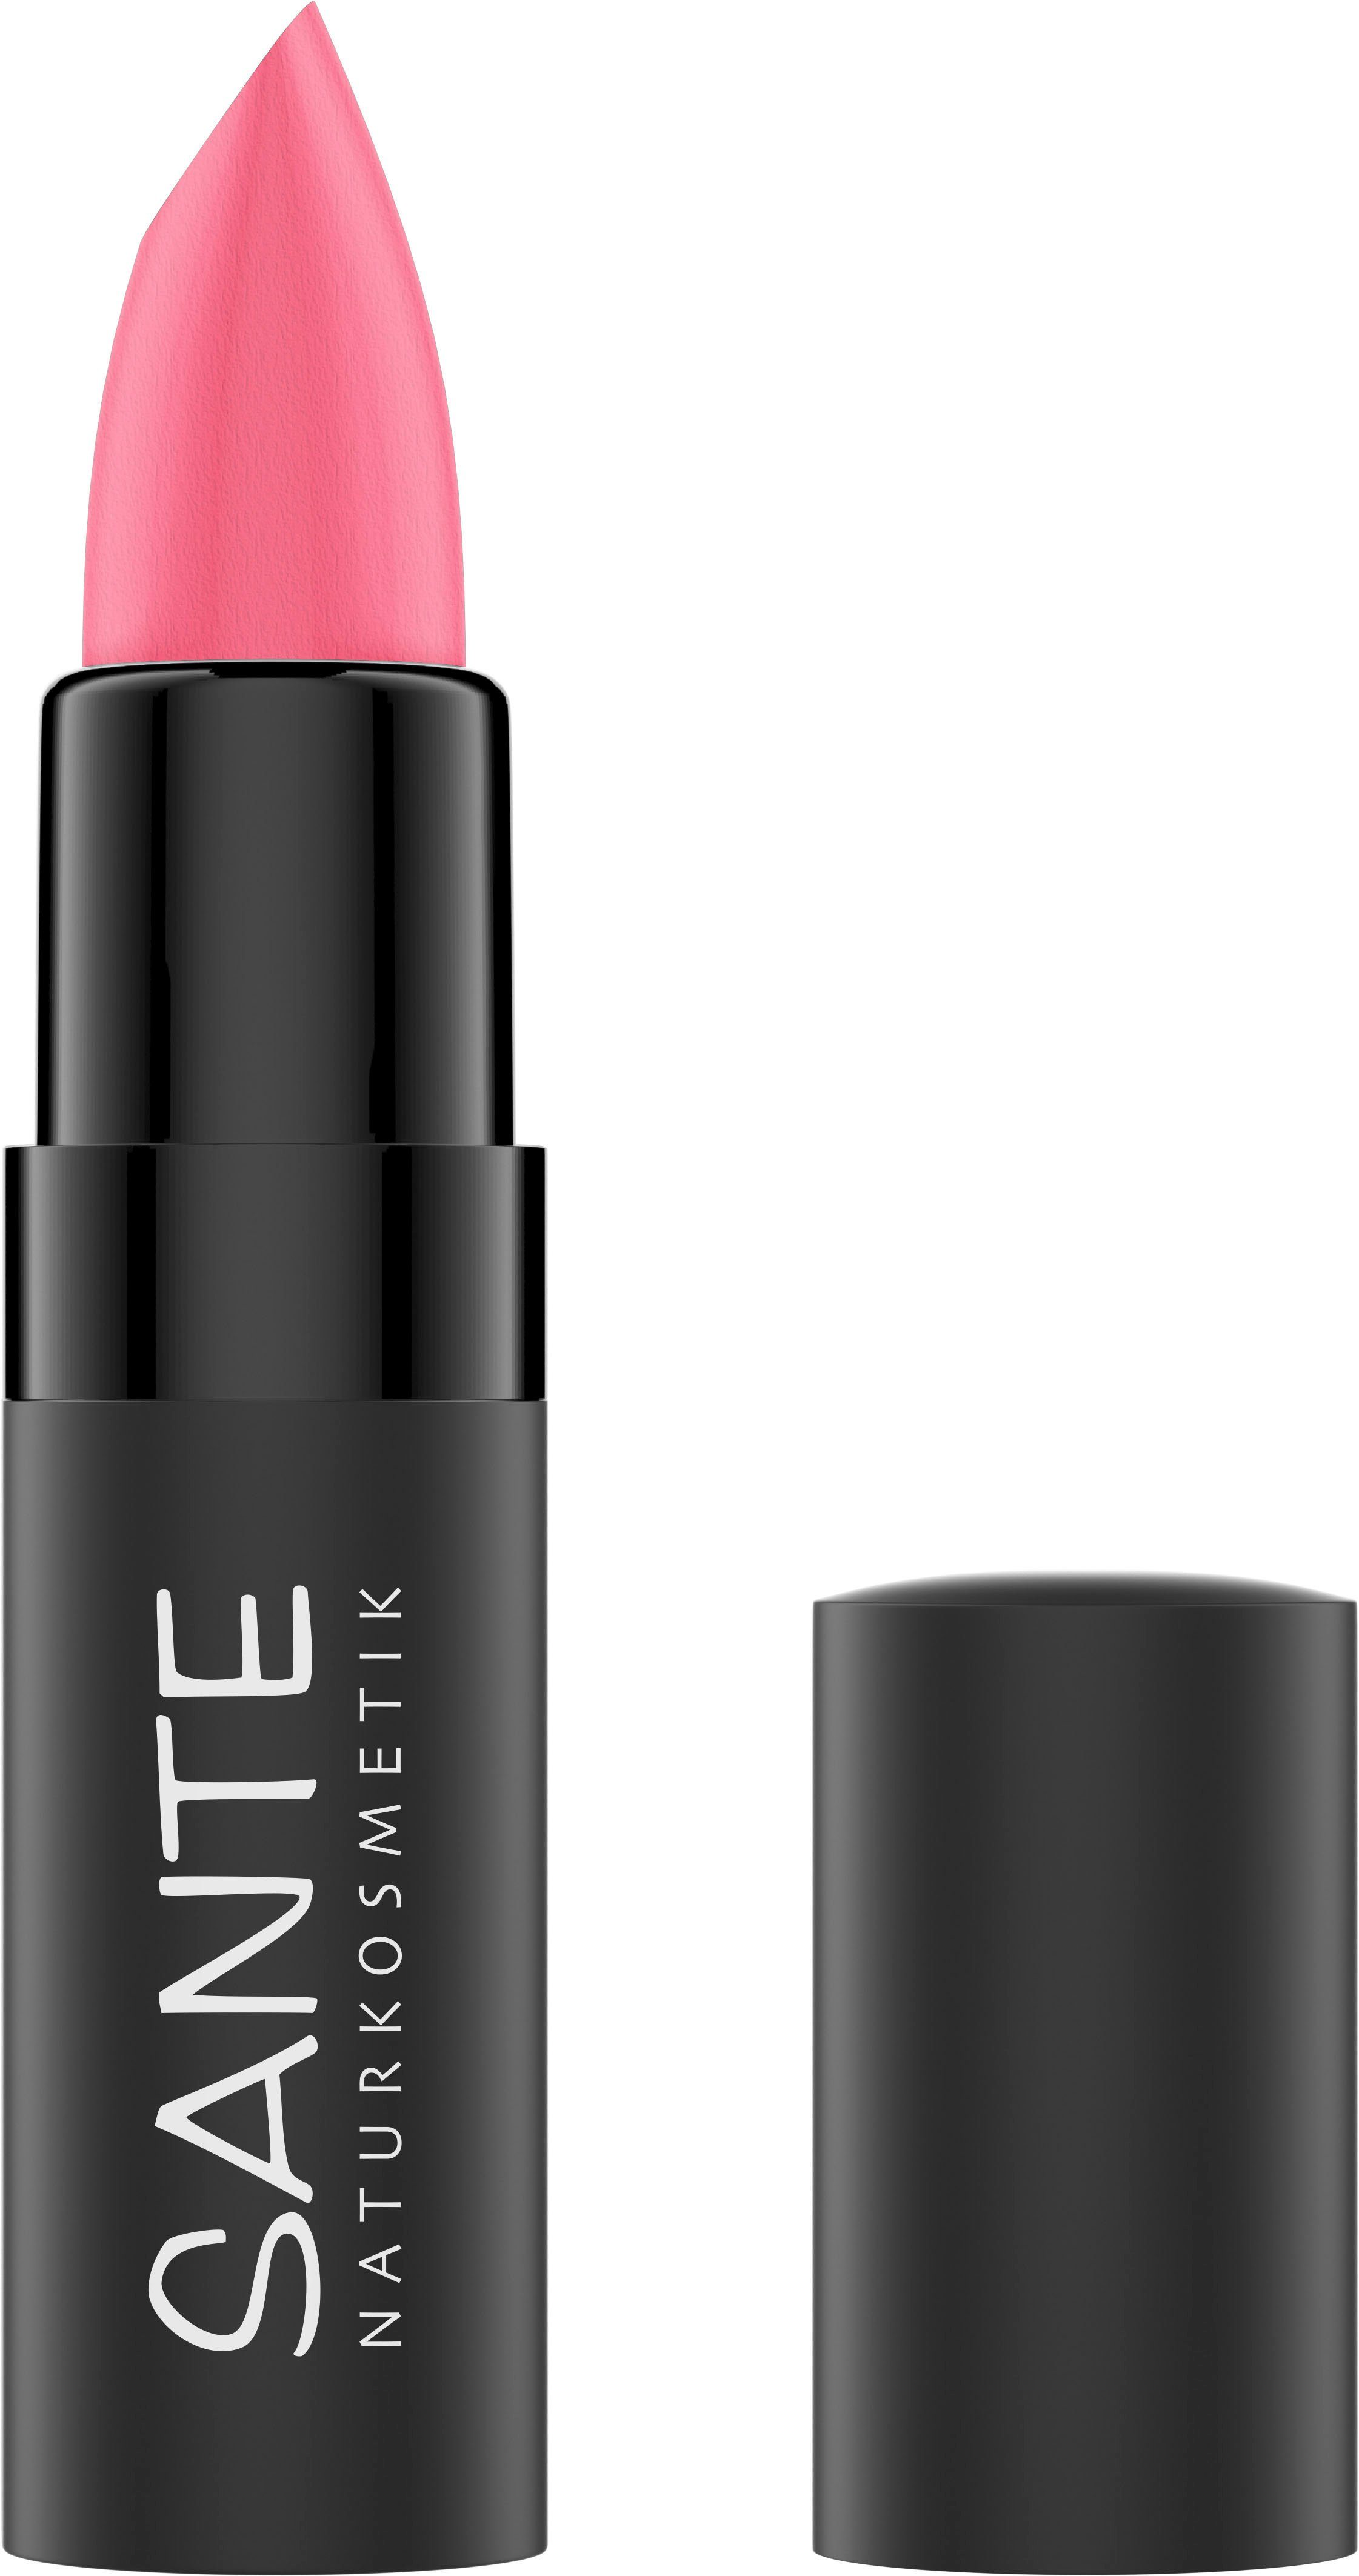 Neue Ware zu günstigen Preisen SANTE Lippenstift Sante Rose Gentle Lipstick 02 Matte